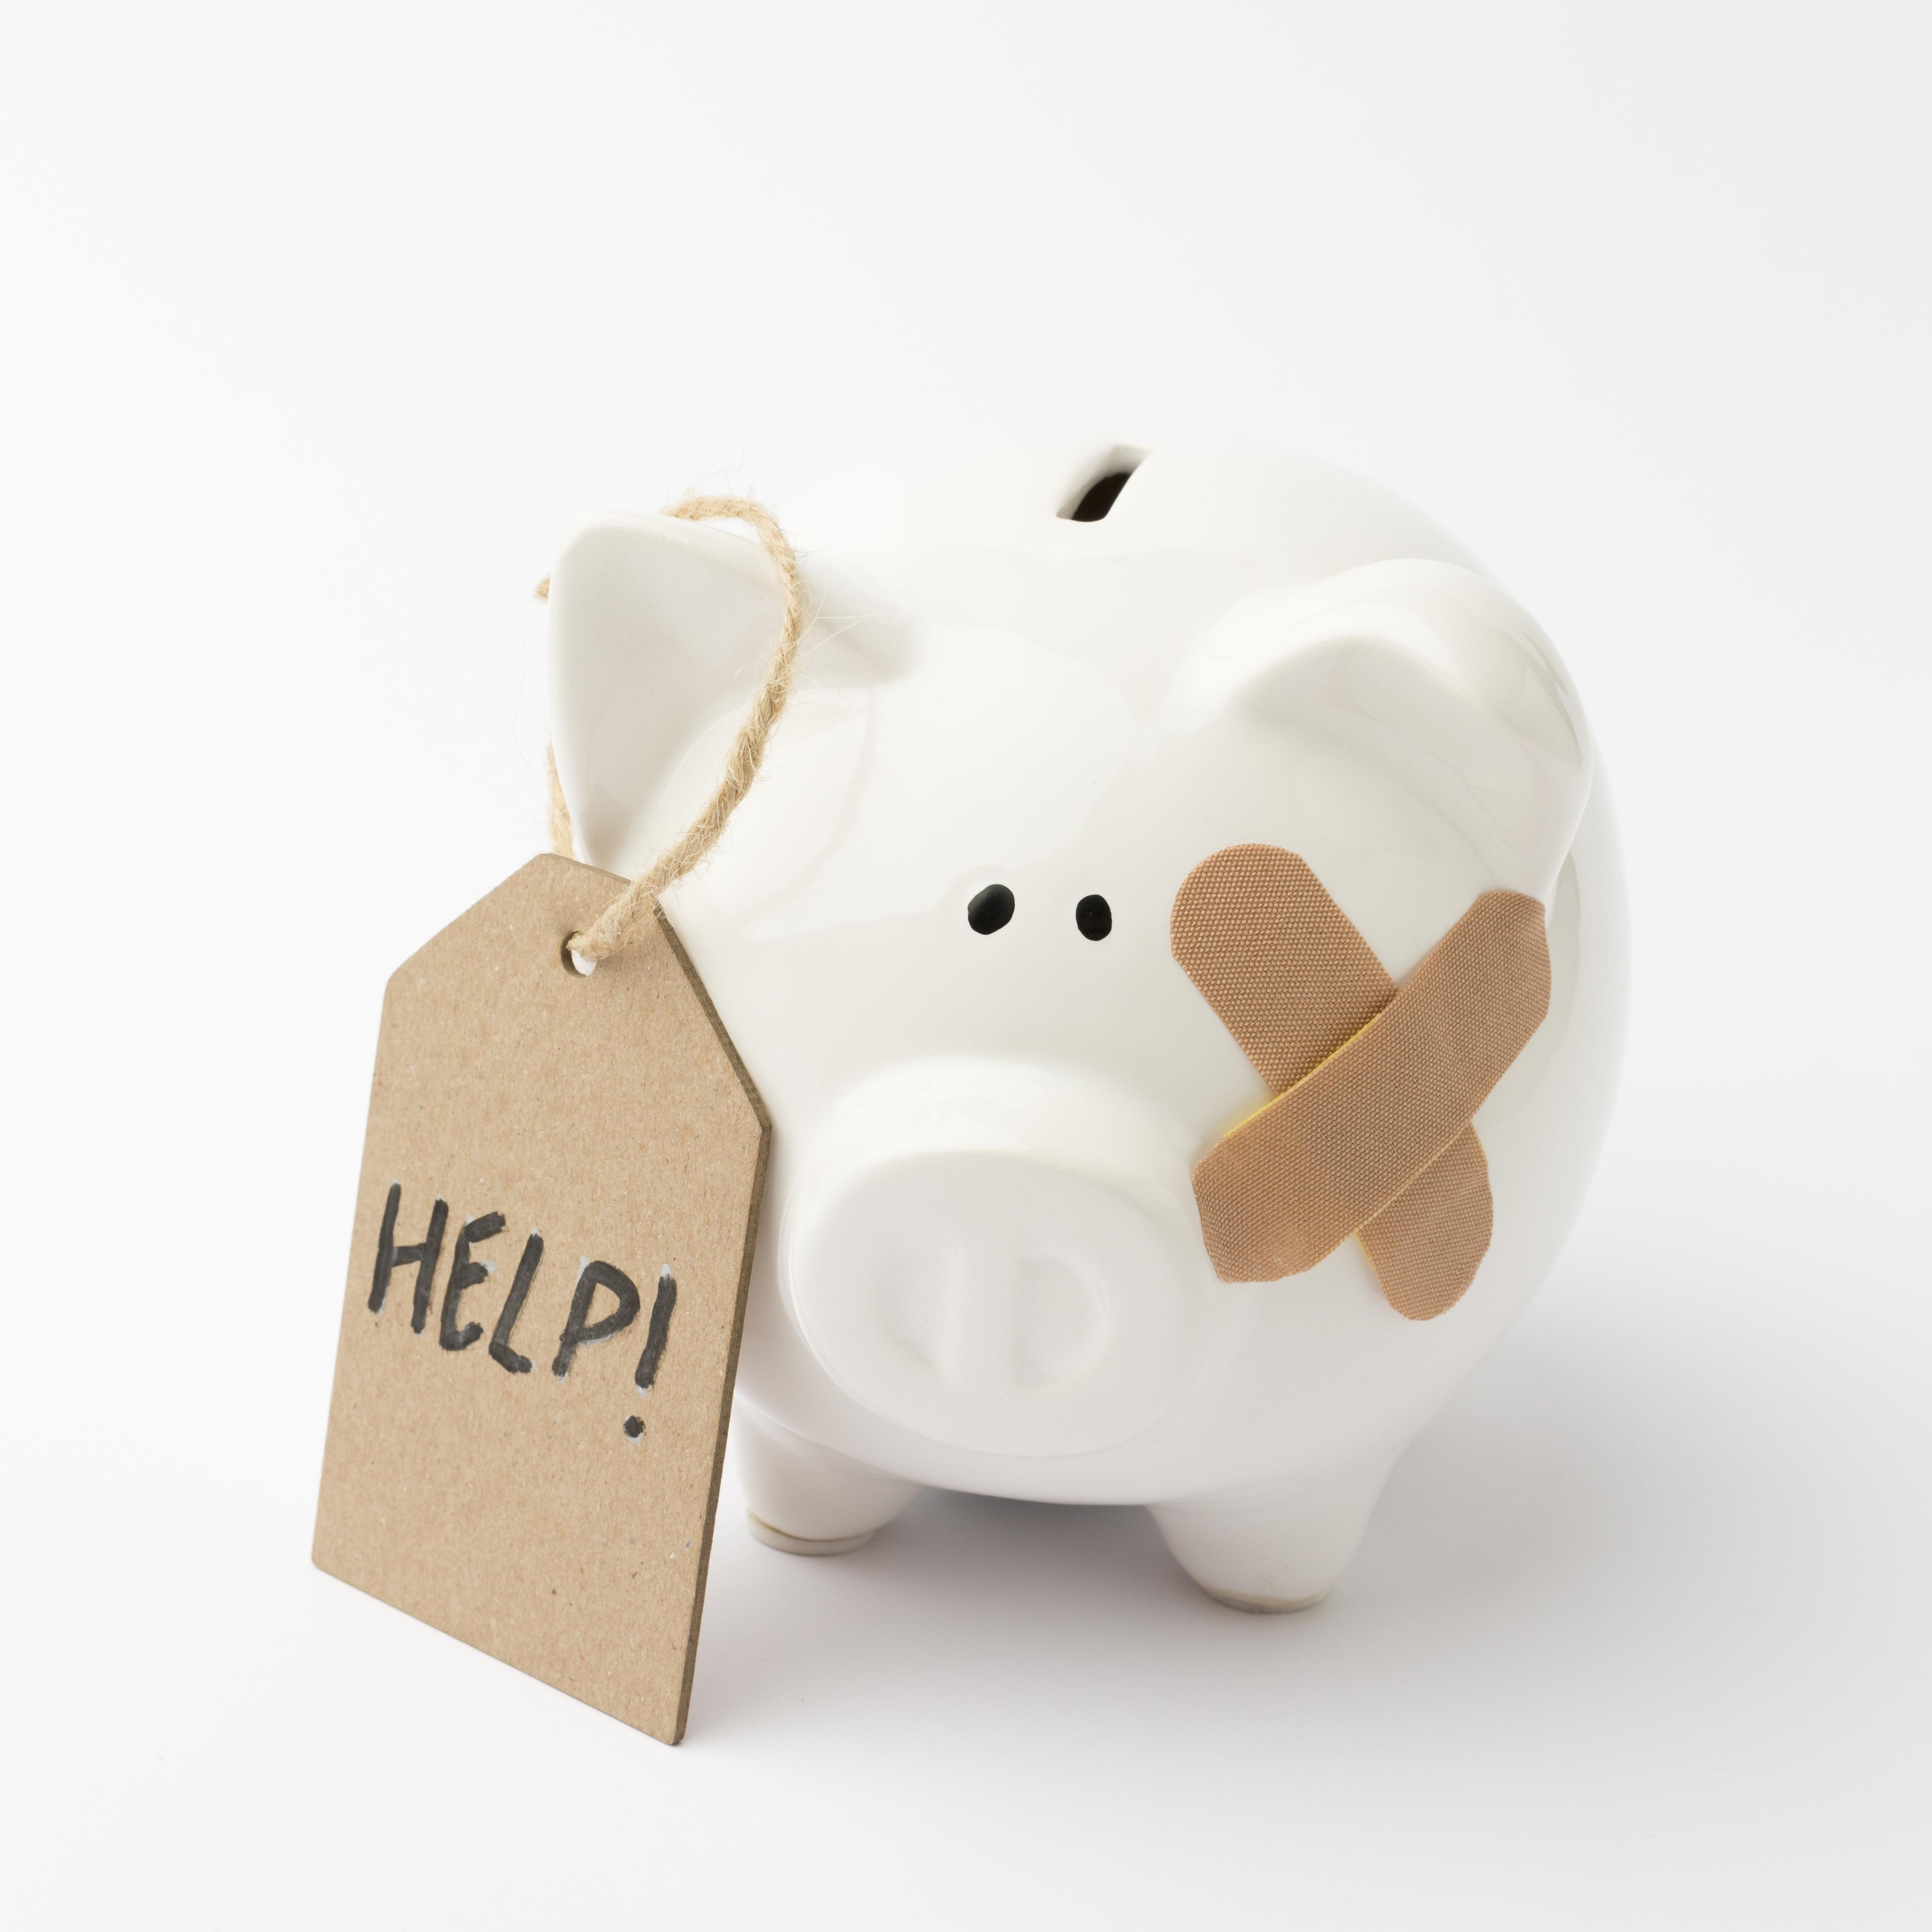 broken piggy bank asking for help